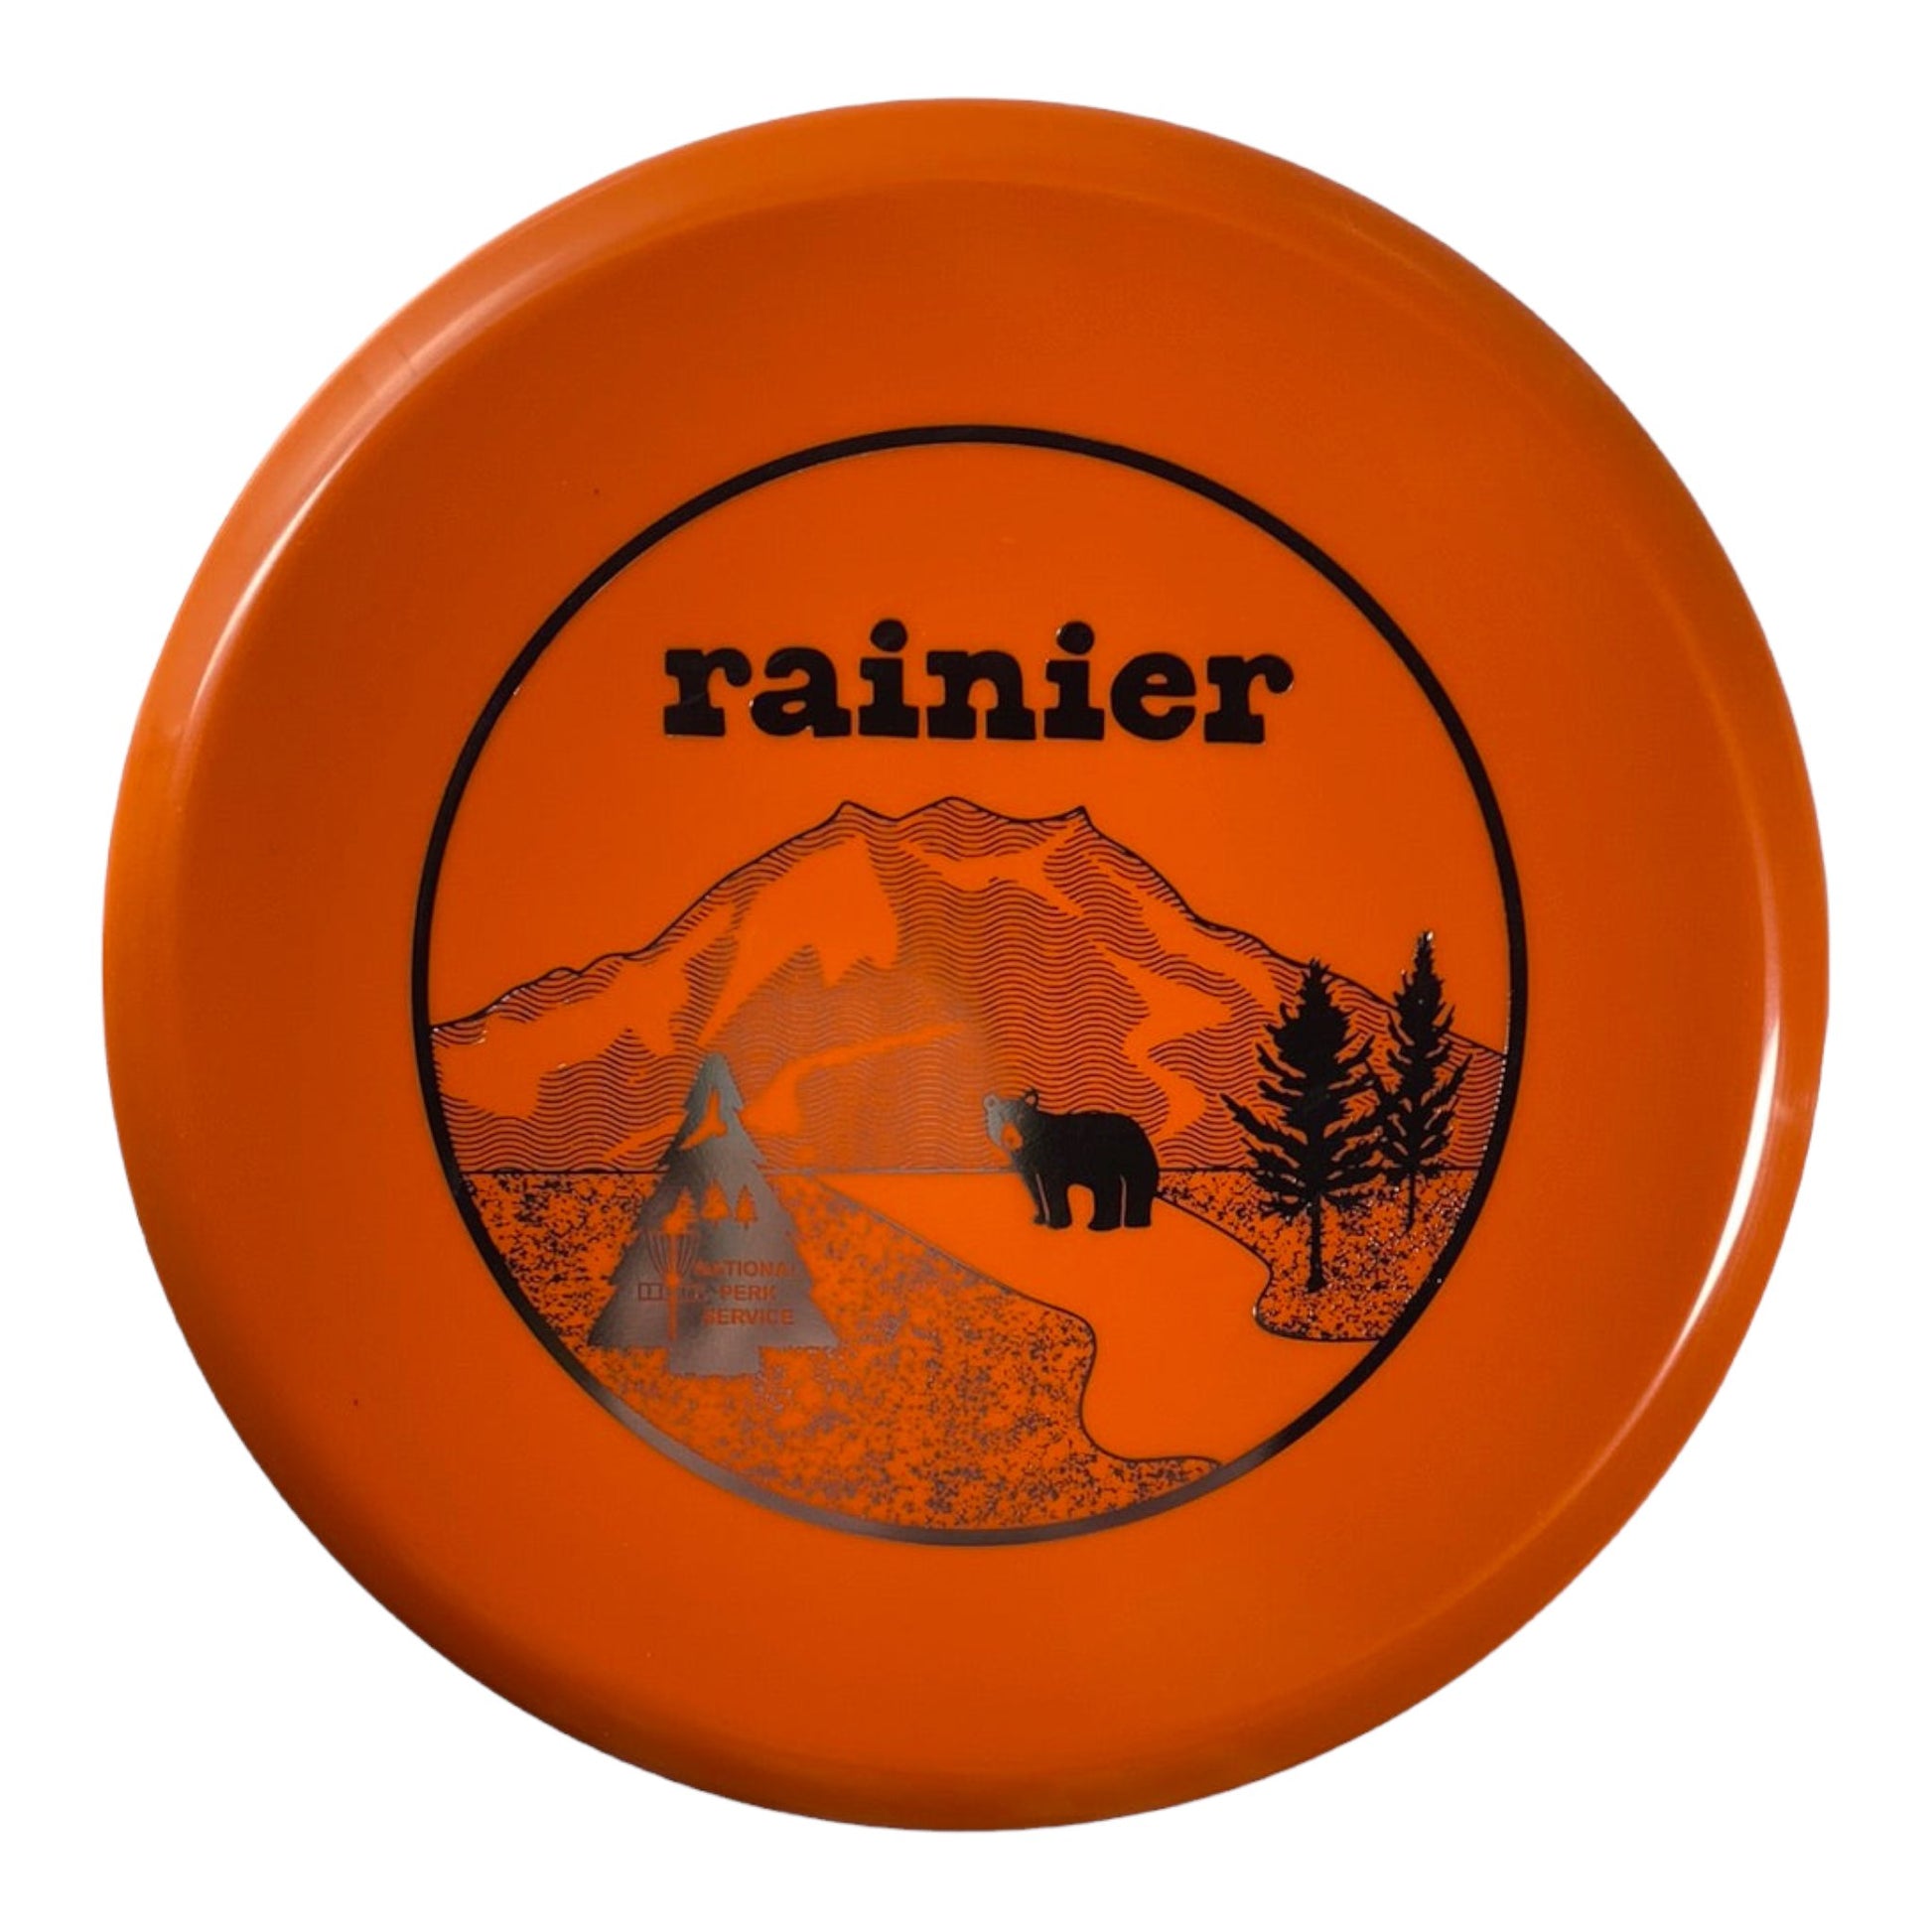 Innova Champion Discs Rainier - Invader | Star | Orange/Silver 171g (First Run) 17/50 Disc Golf